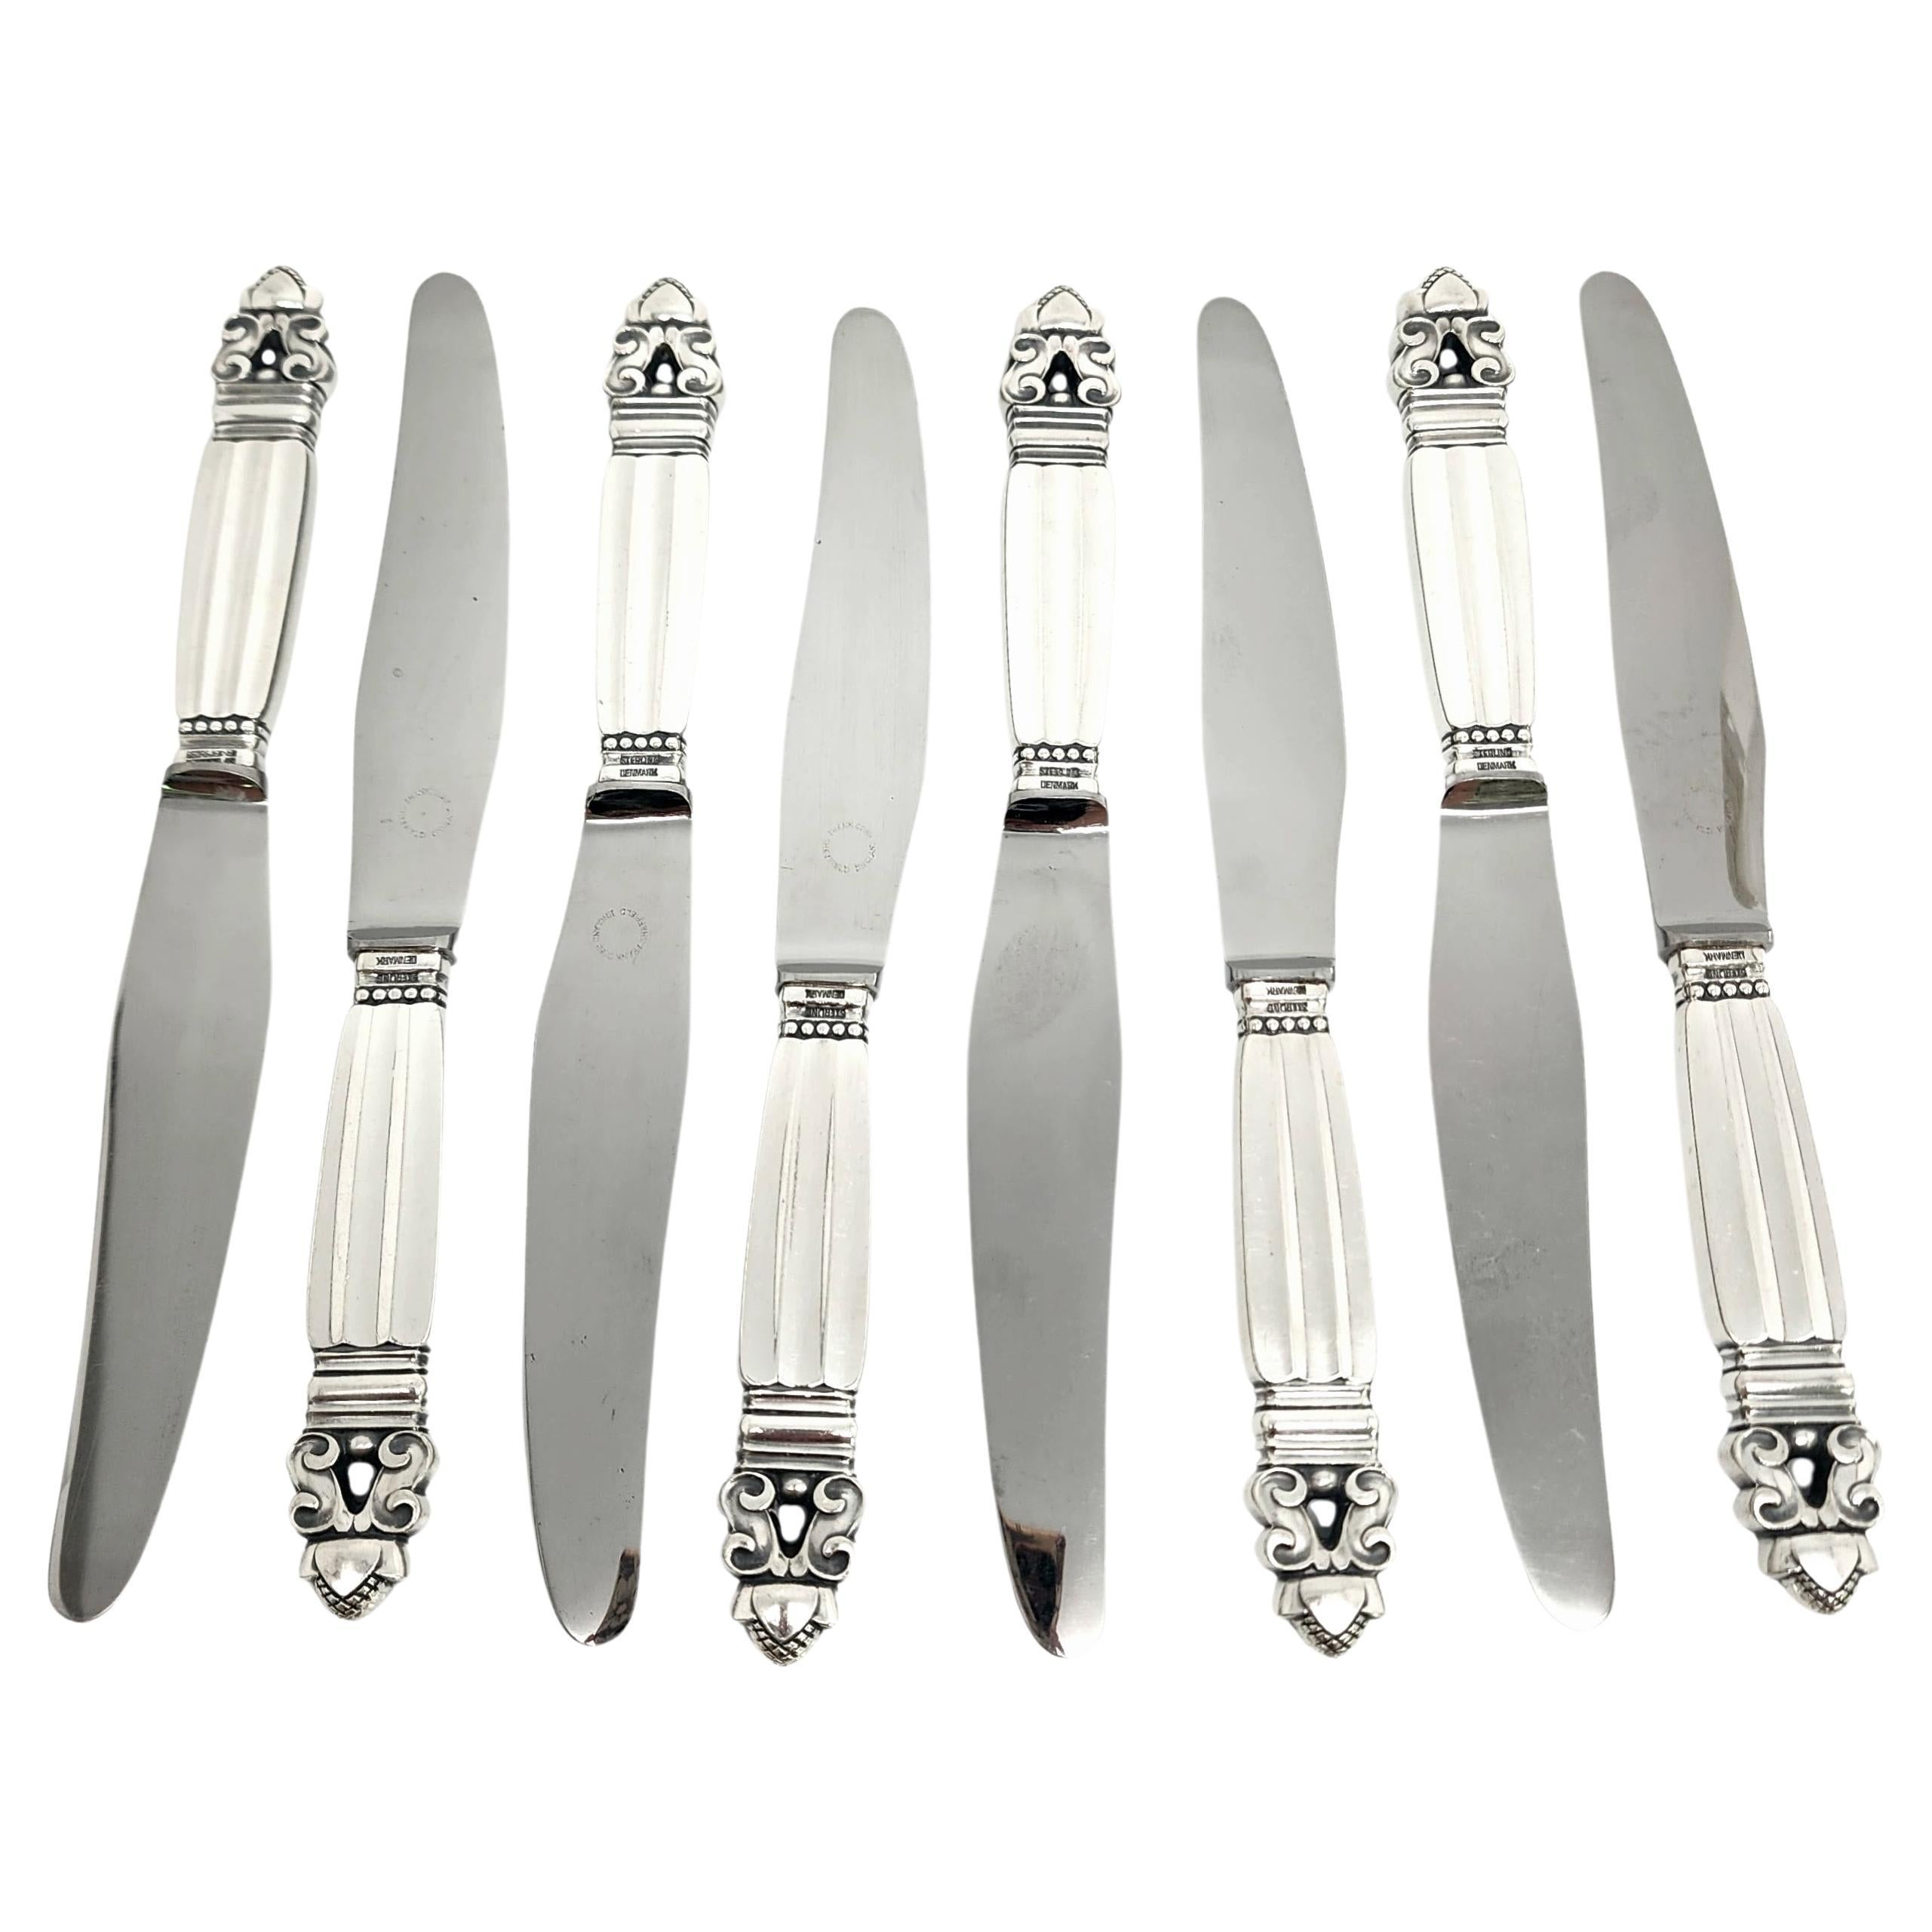 Jensen & Wendel Denmark Acorn Sterling Handle Stainless Blade Knives 8" #14923